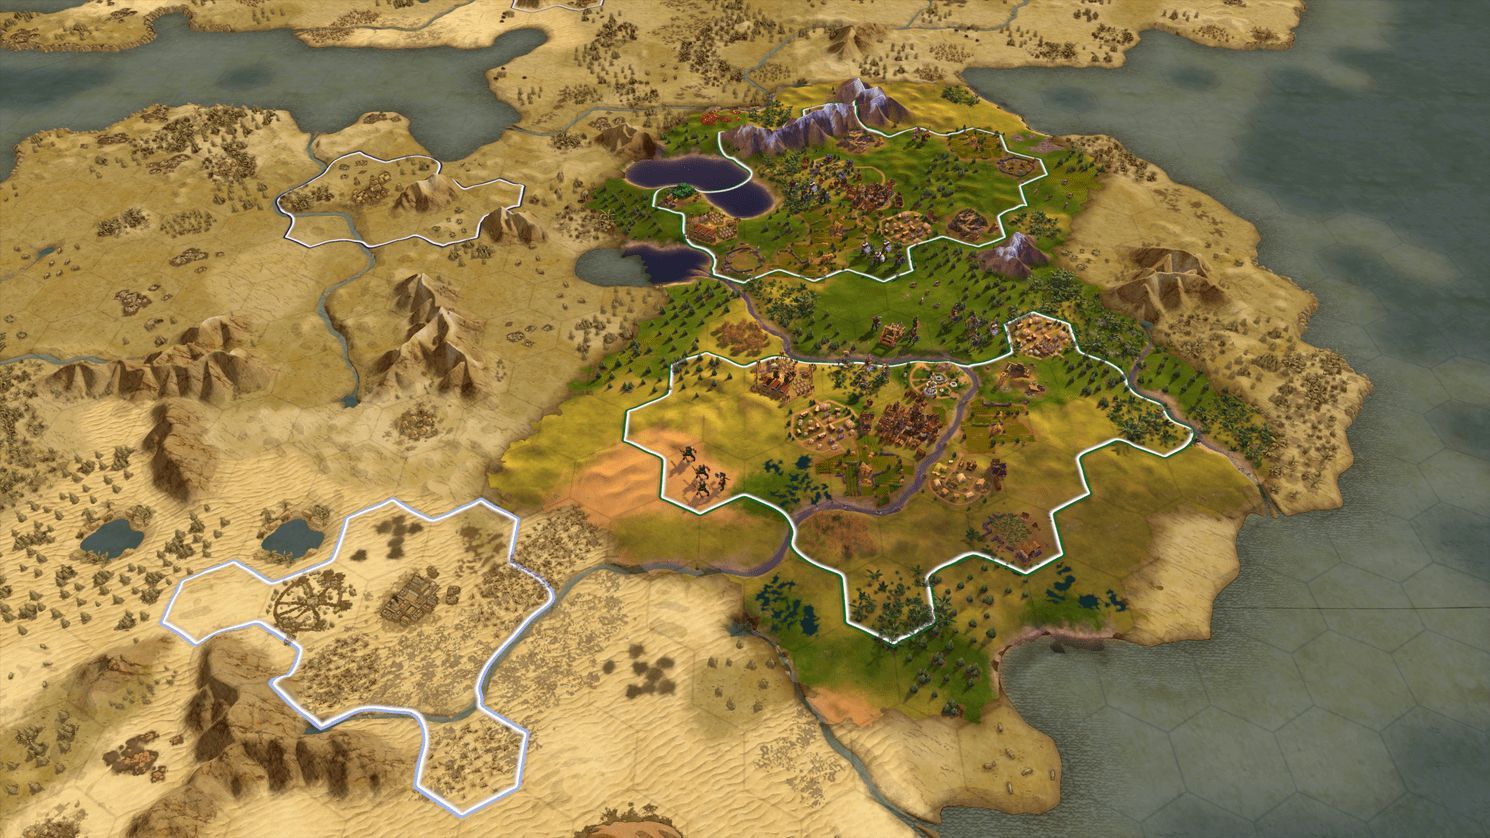 Gra Sid Meier's Civilization VI PL (PS4)